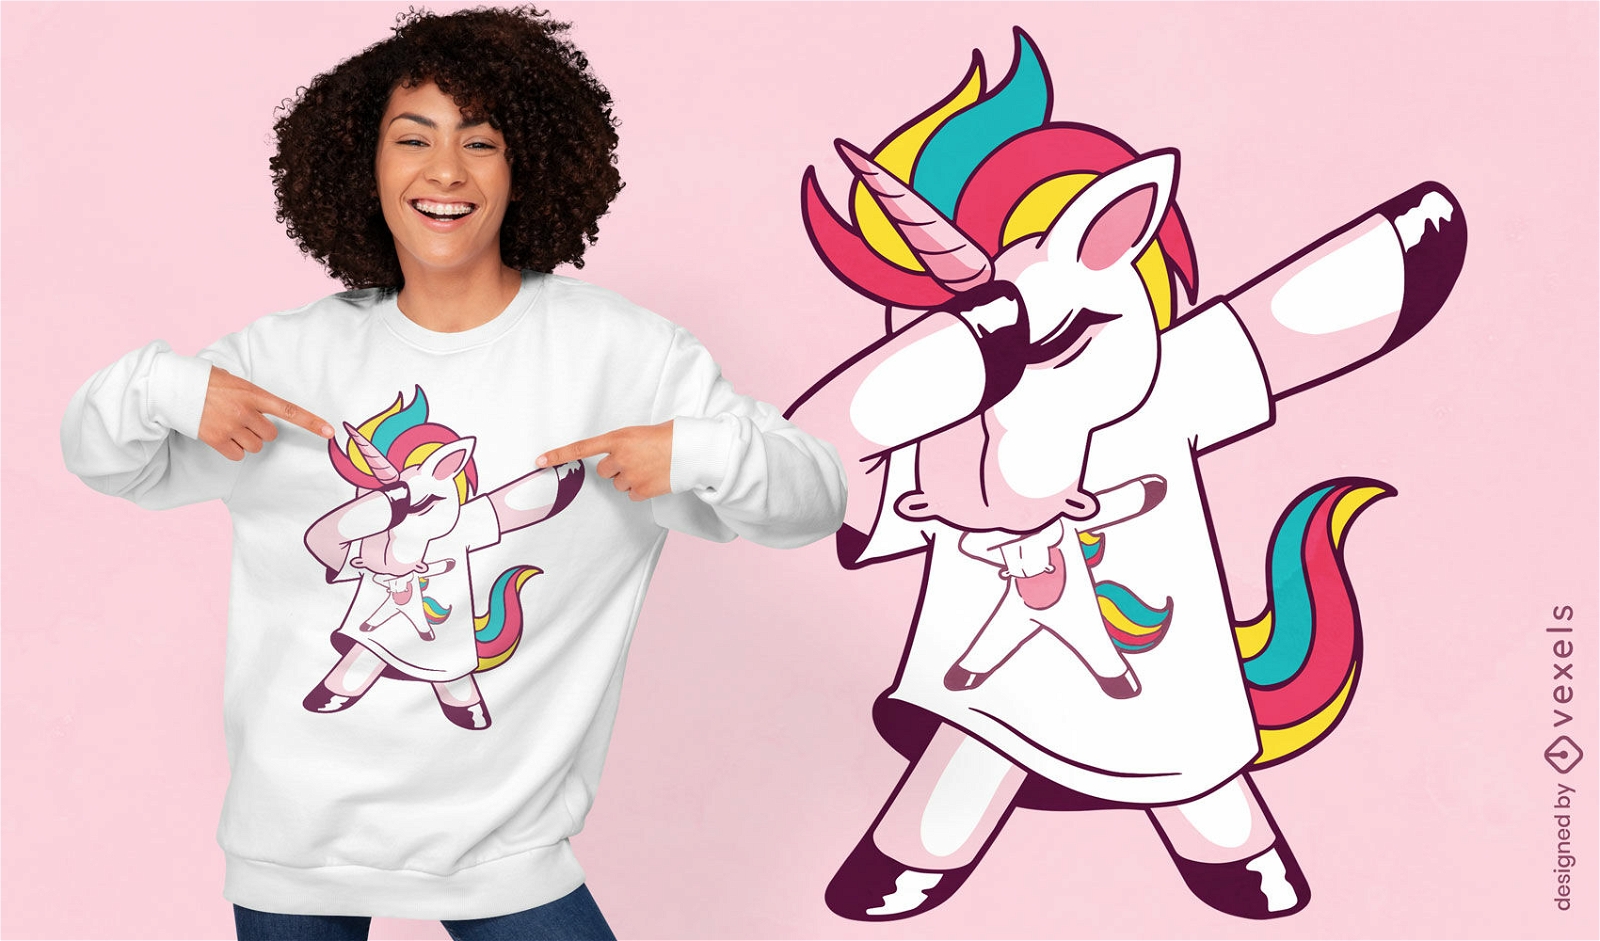 Dise?o de camiseta Dabbing de unicornio arco?ris.